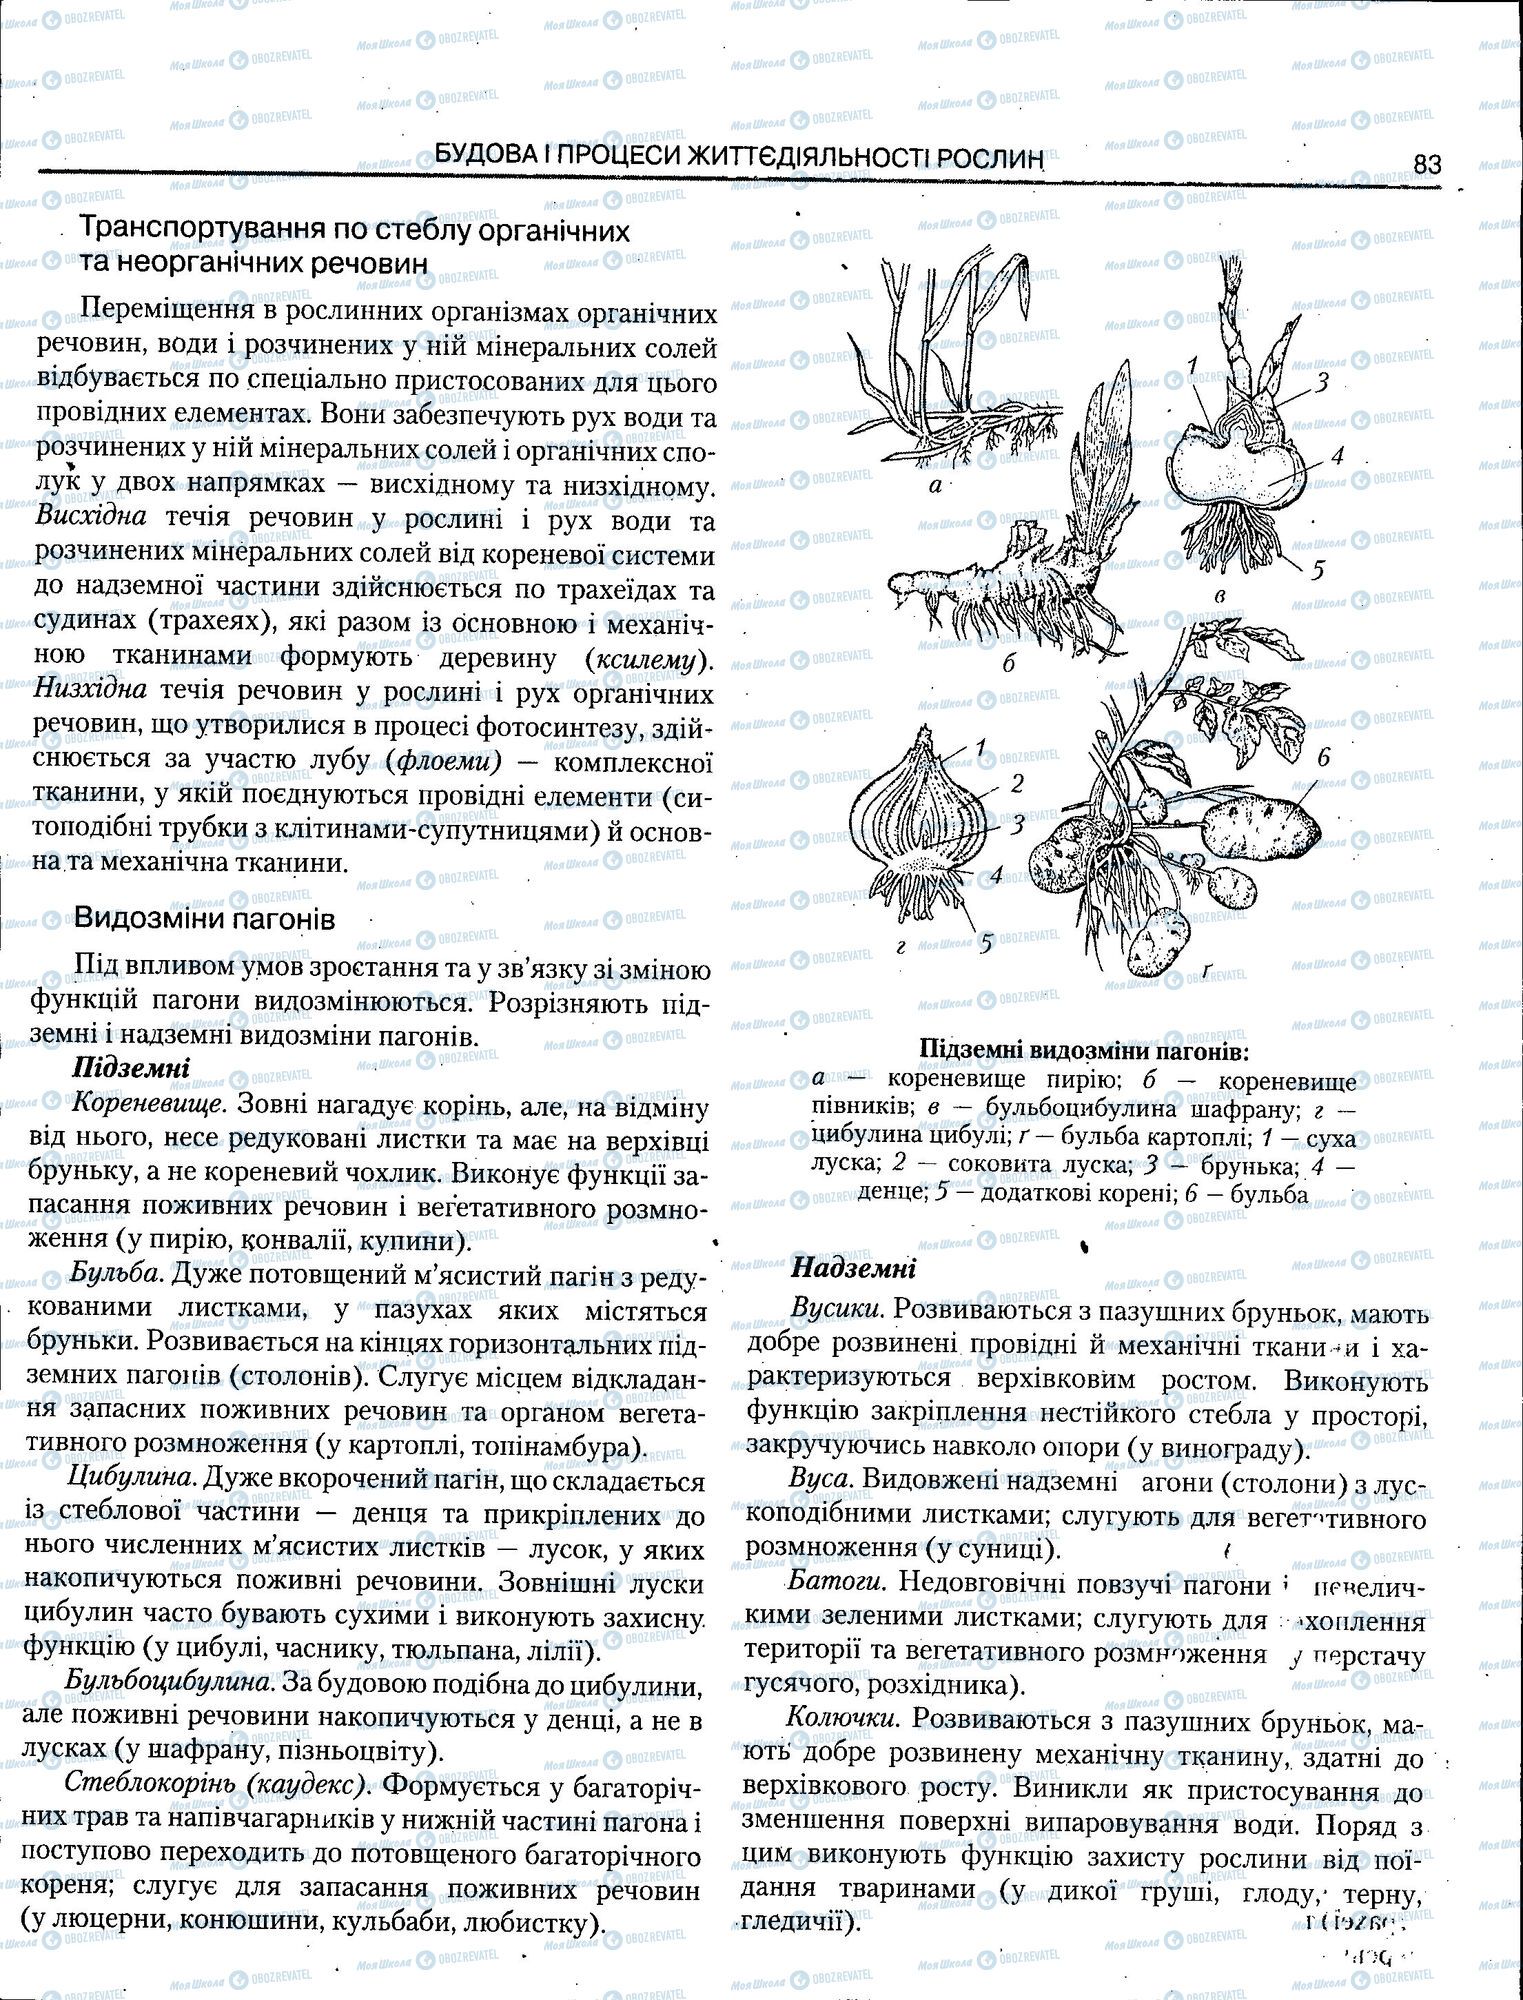 ЗНО Биология 11 класс страница 083